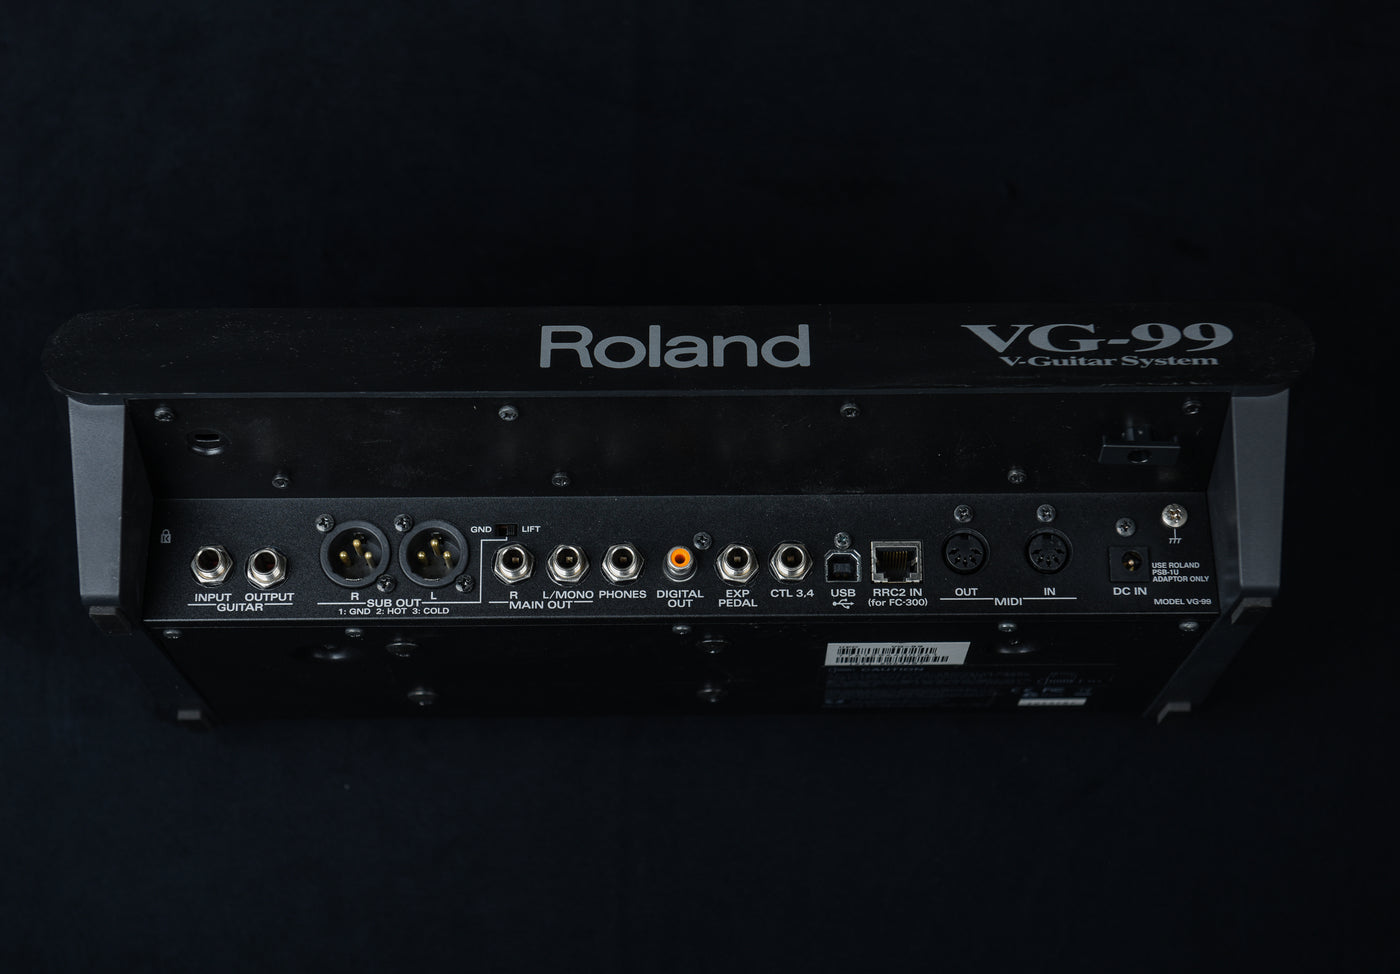 VG-99 V-Guitar System, Recent